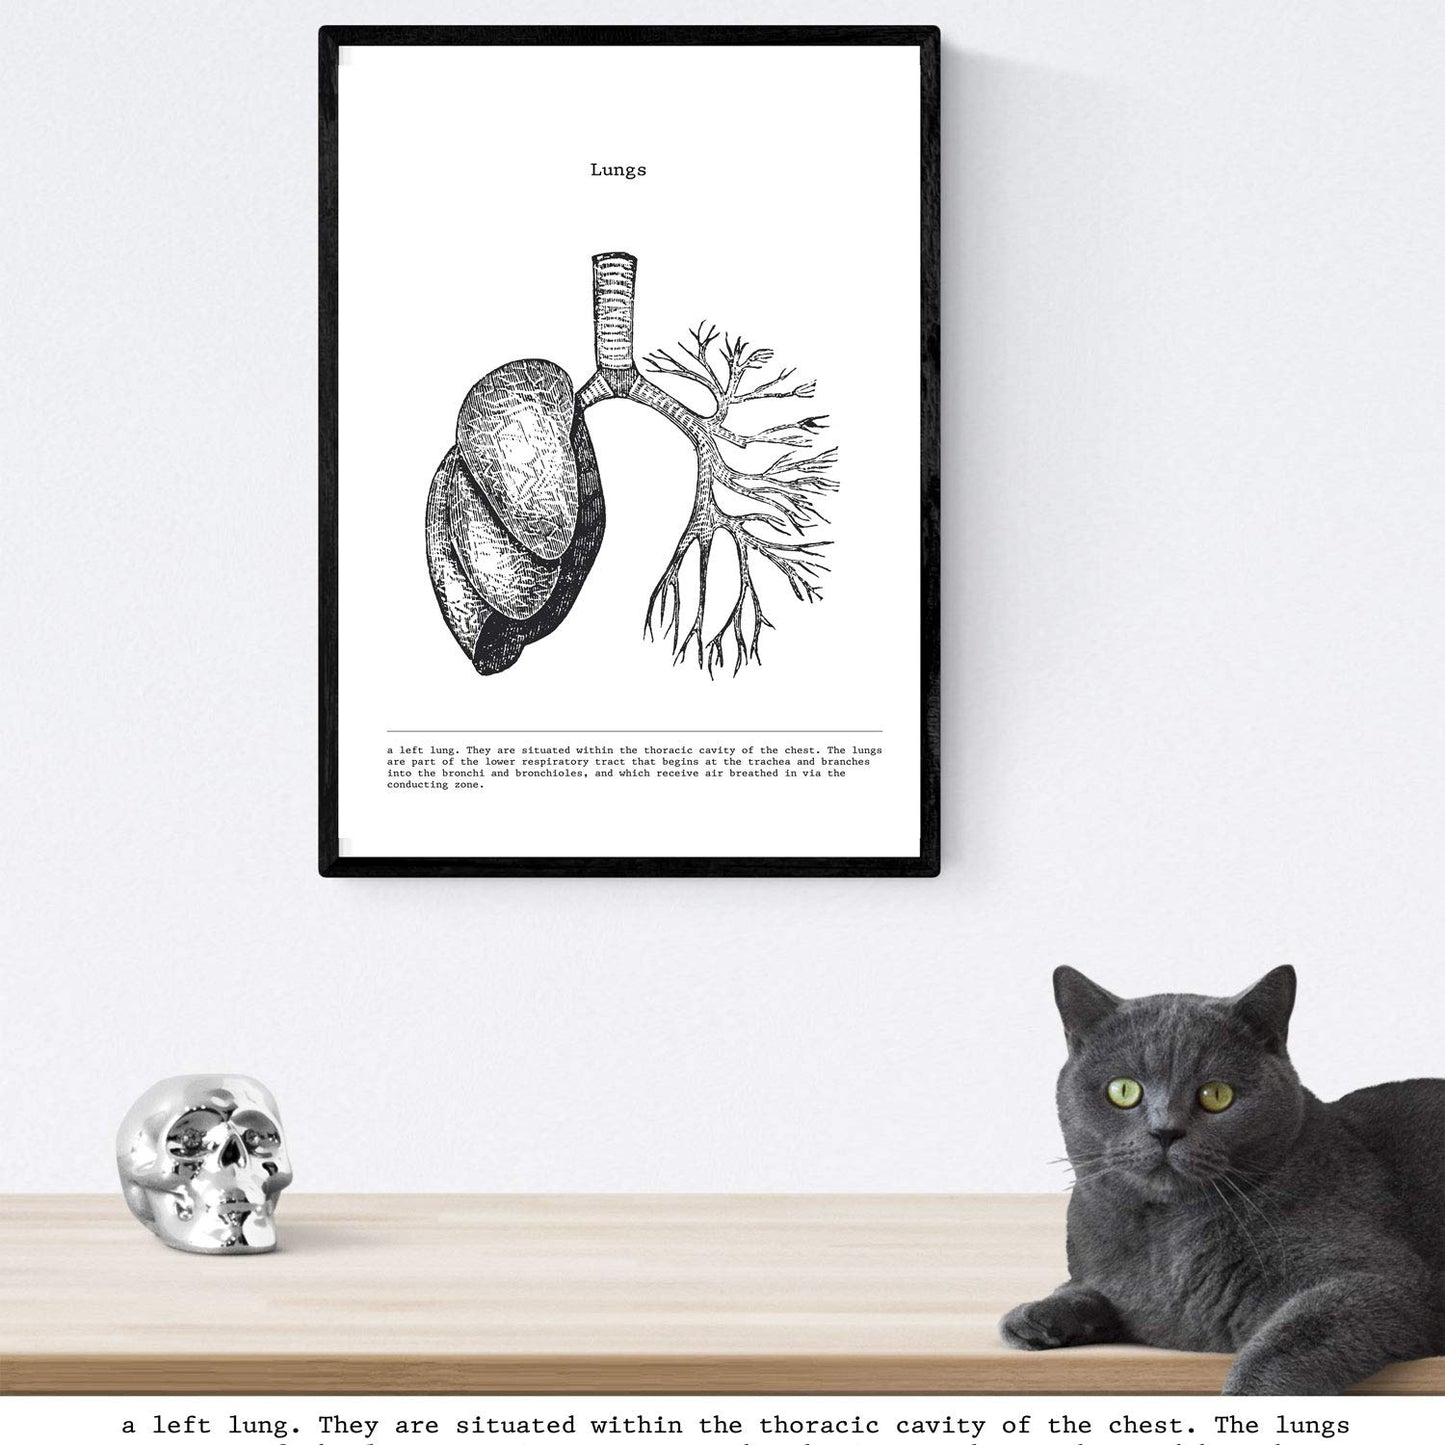 Set de 3 posters de anatomía en blanco y negro con imágenes del cuerpo humano. Pack de láminas sobre biología con "Corazón, Hígado y Pulmones". .-Artwork-Nacnic-Nacnic Estudio SL